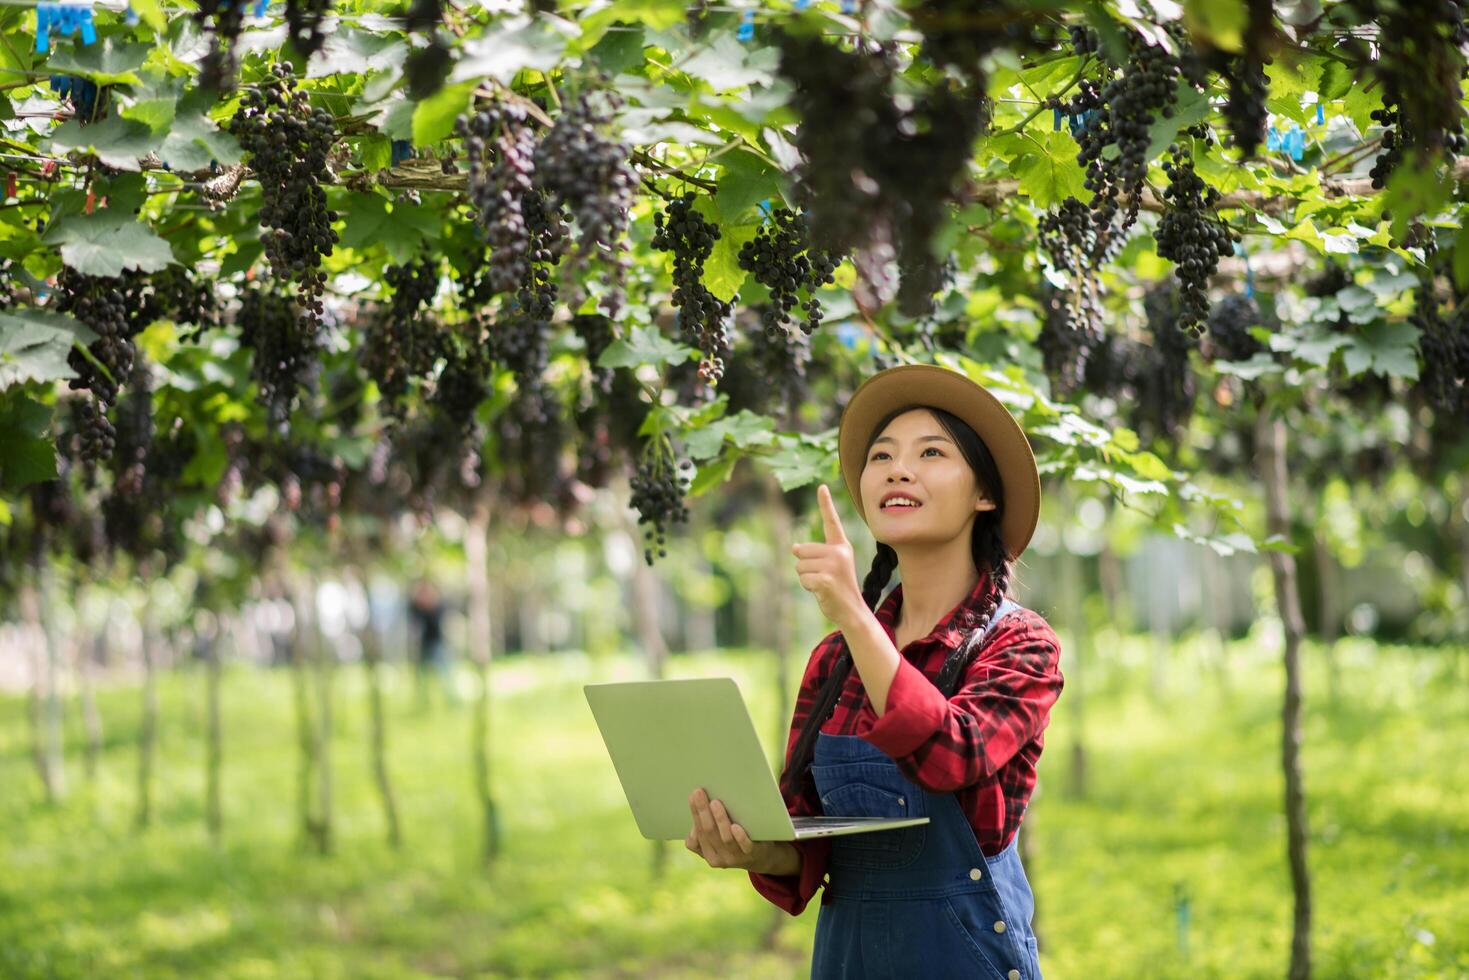 feliz jardineiro de mulheres jovens segurando ramos de uva azul madura foto